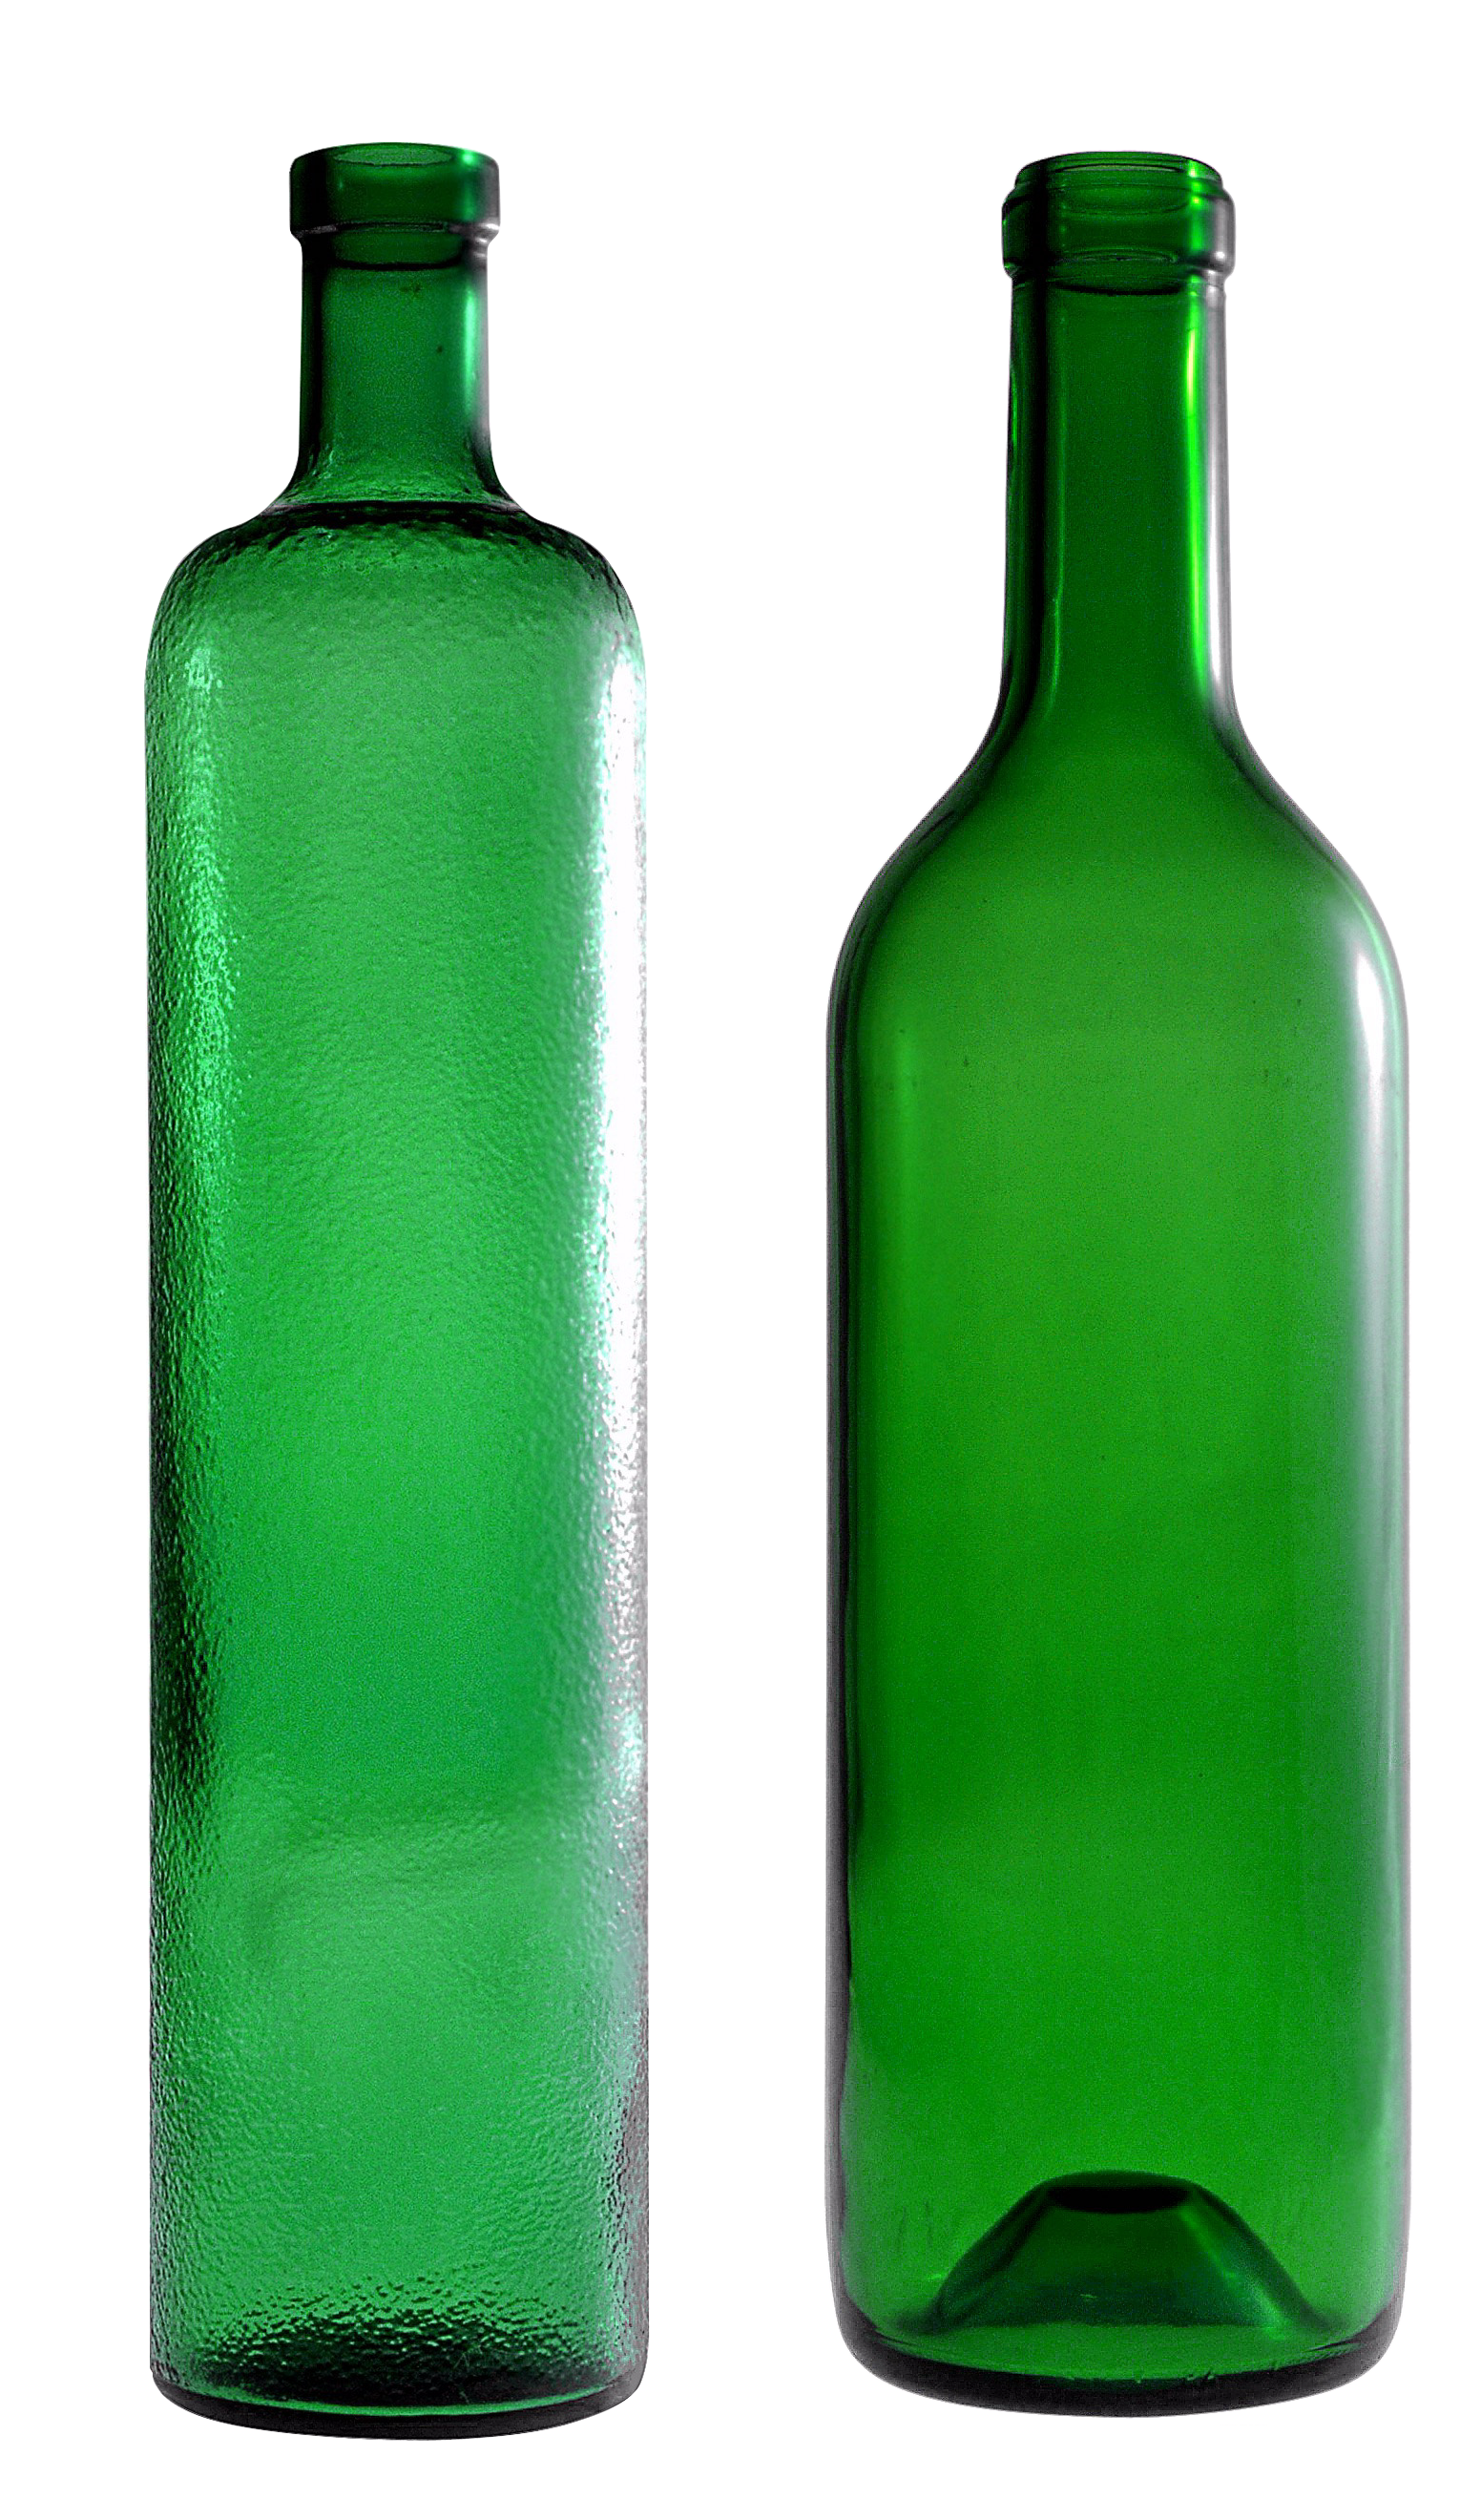 空的绿色玻璃瓶